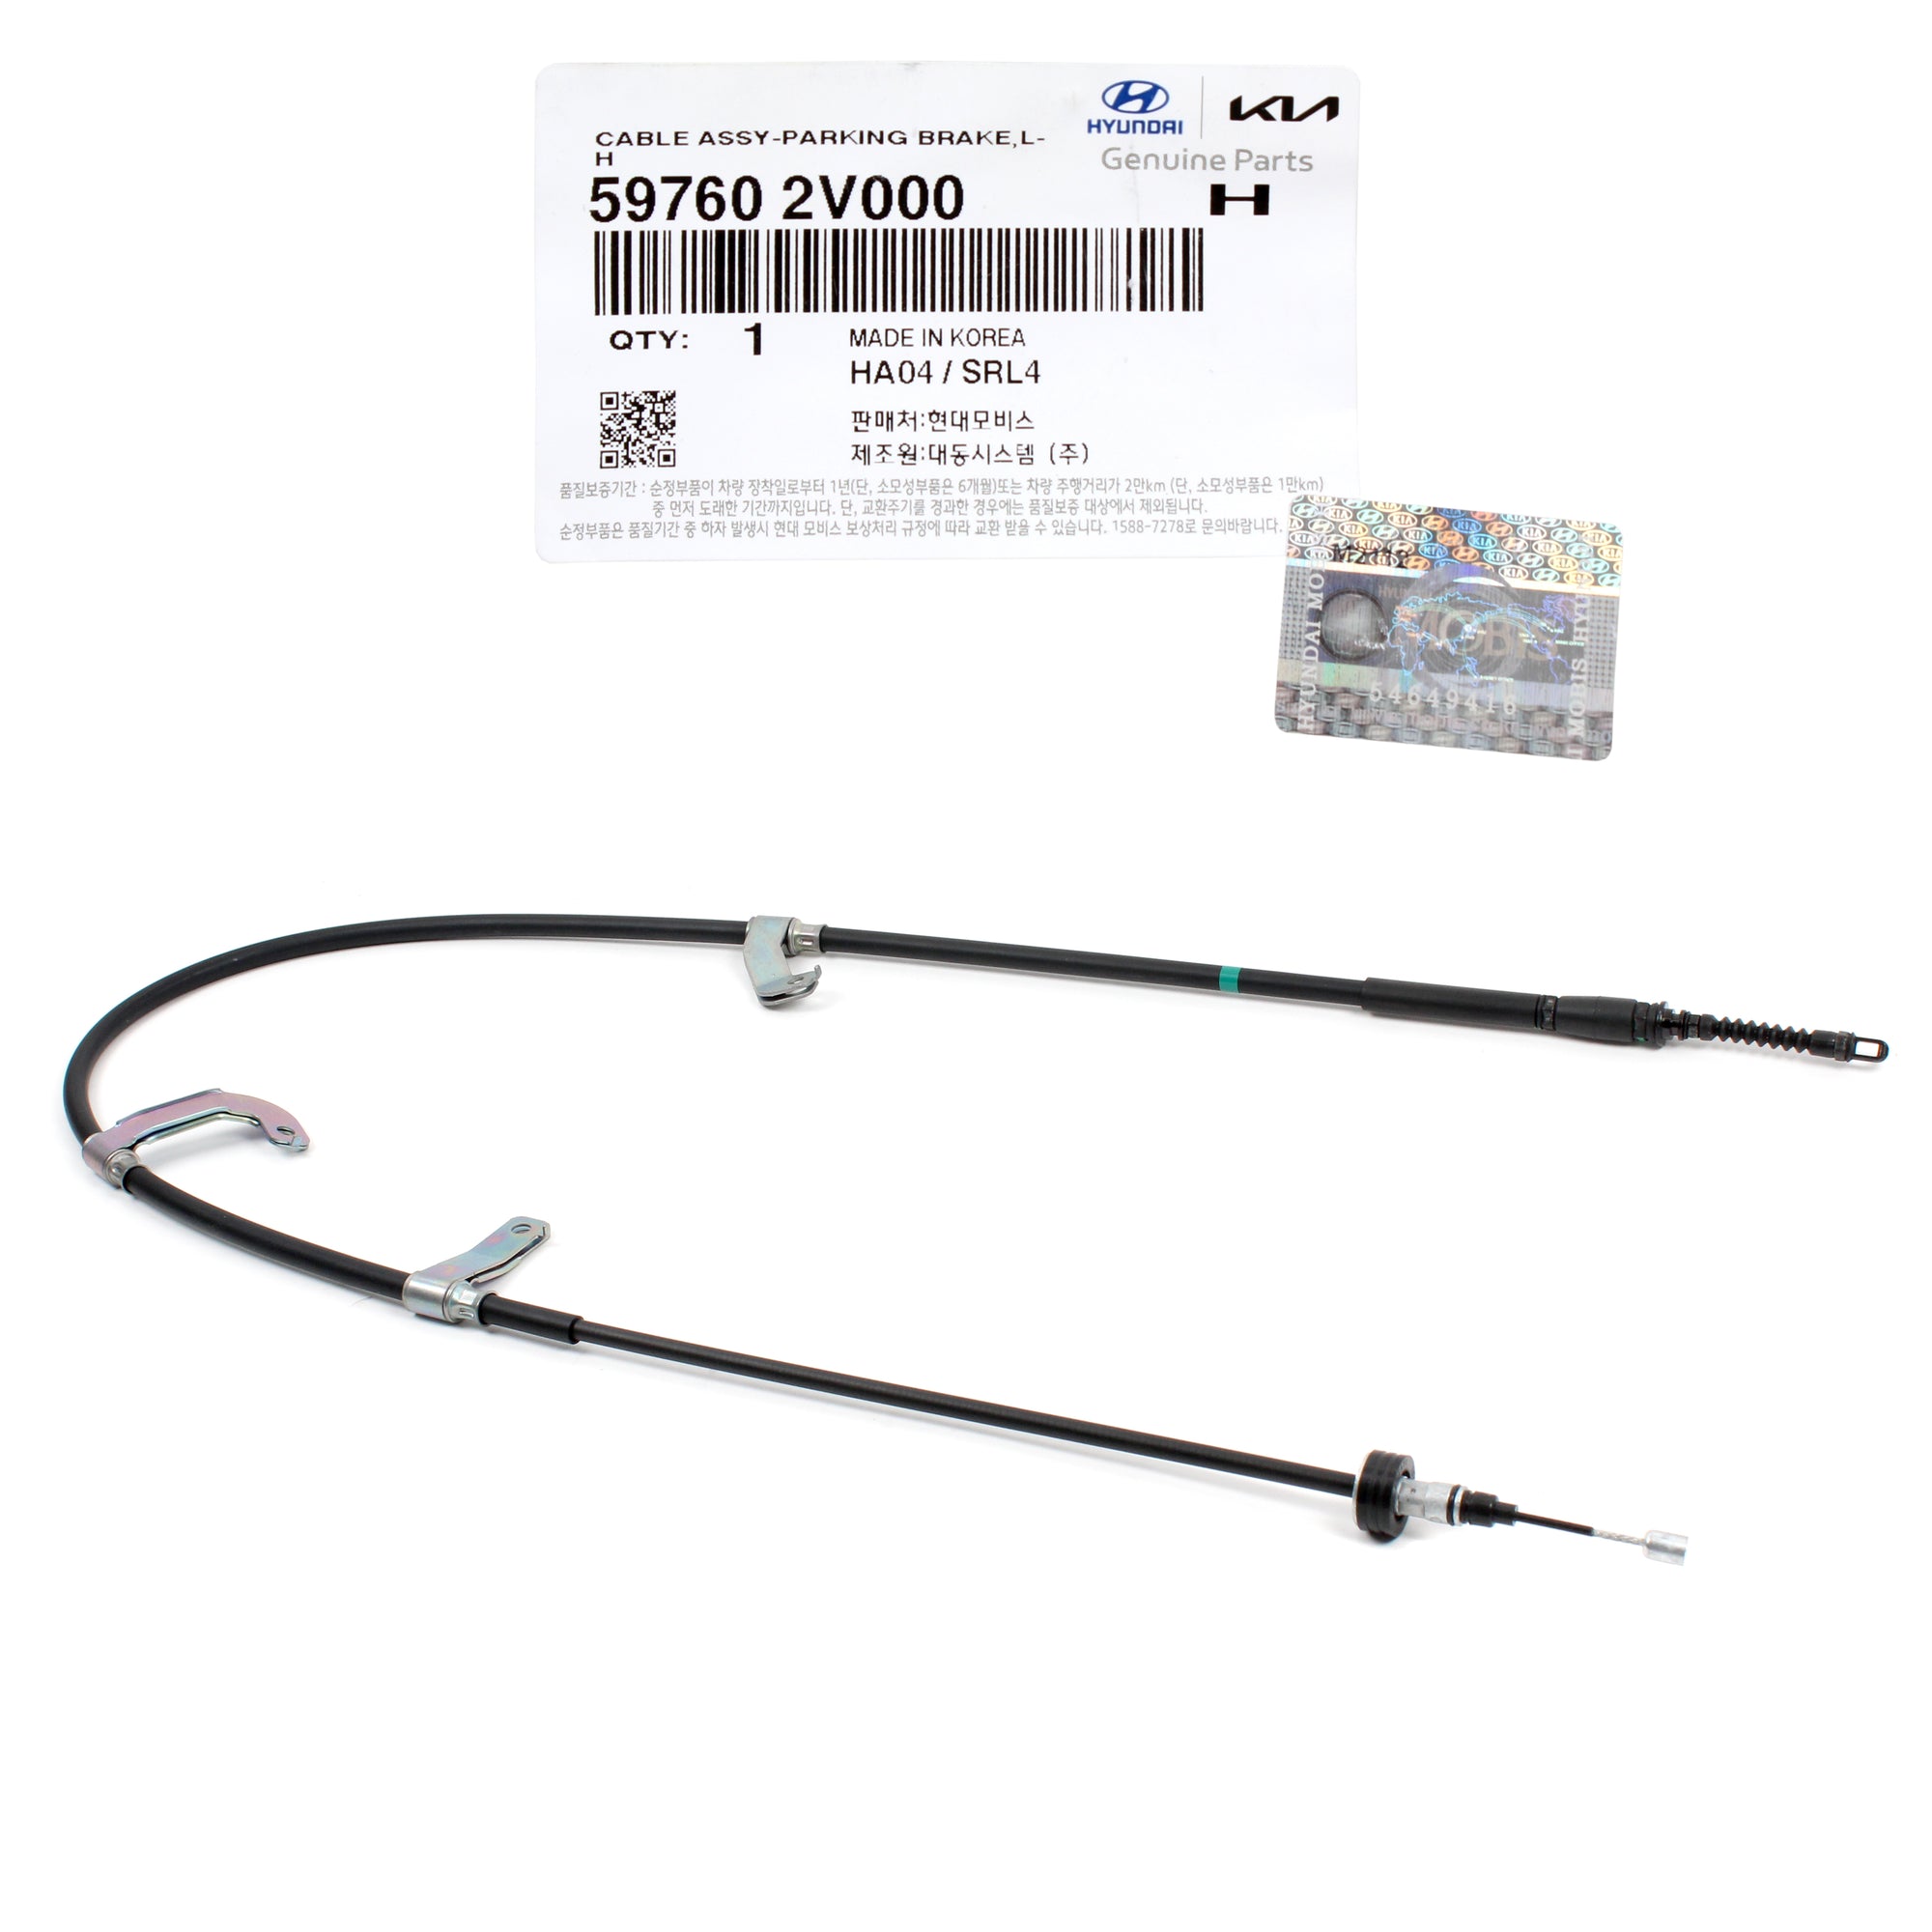 GENUINE Parking Brake Cable LEFT for 2012-2017 Hyundai Veloster 597602V000